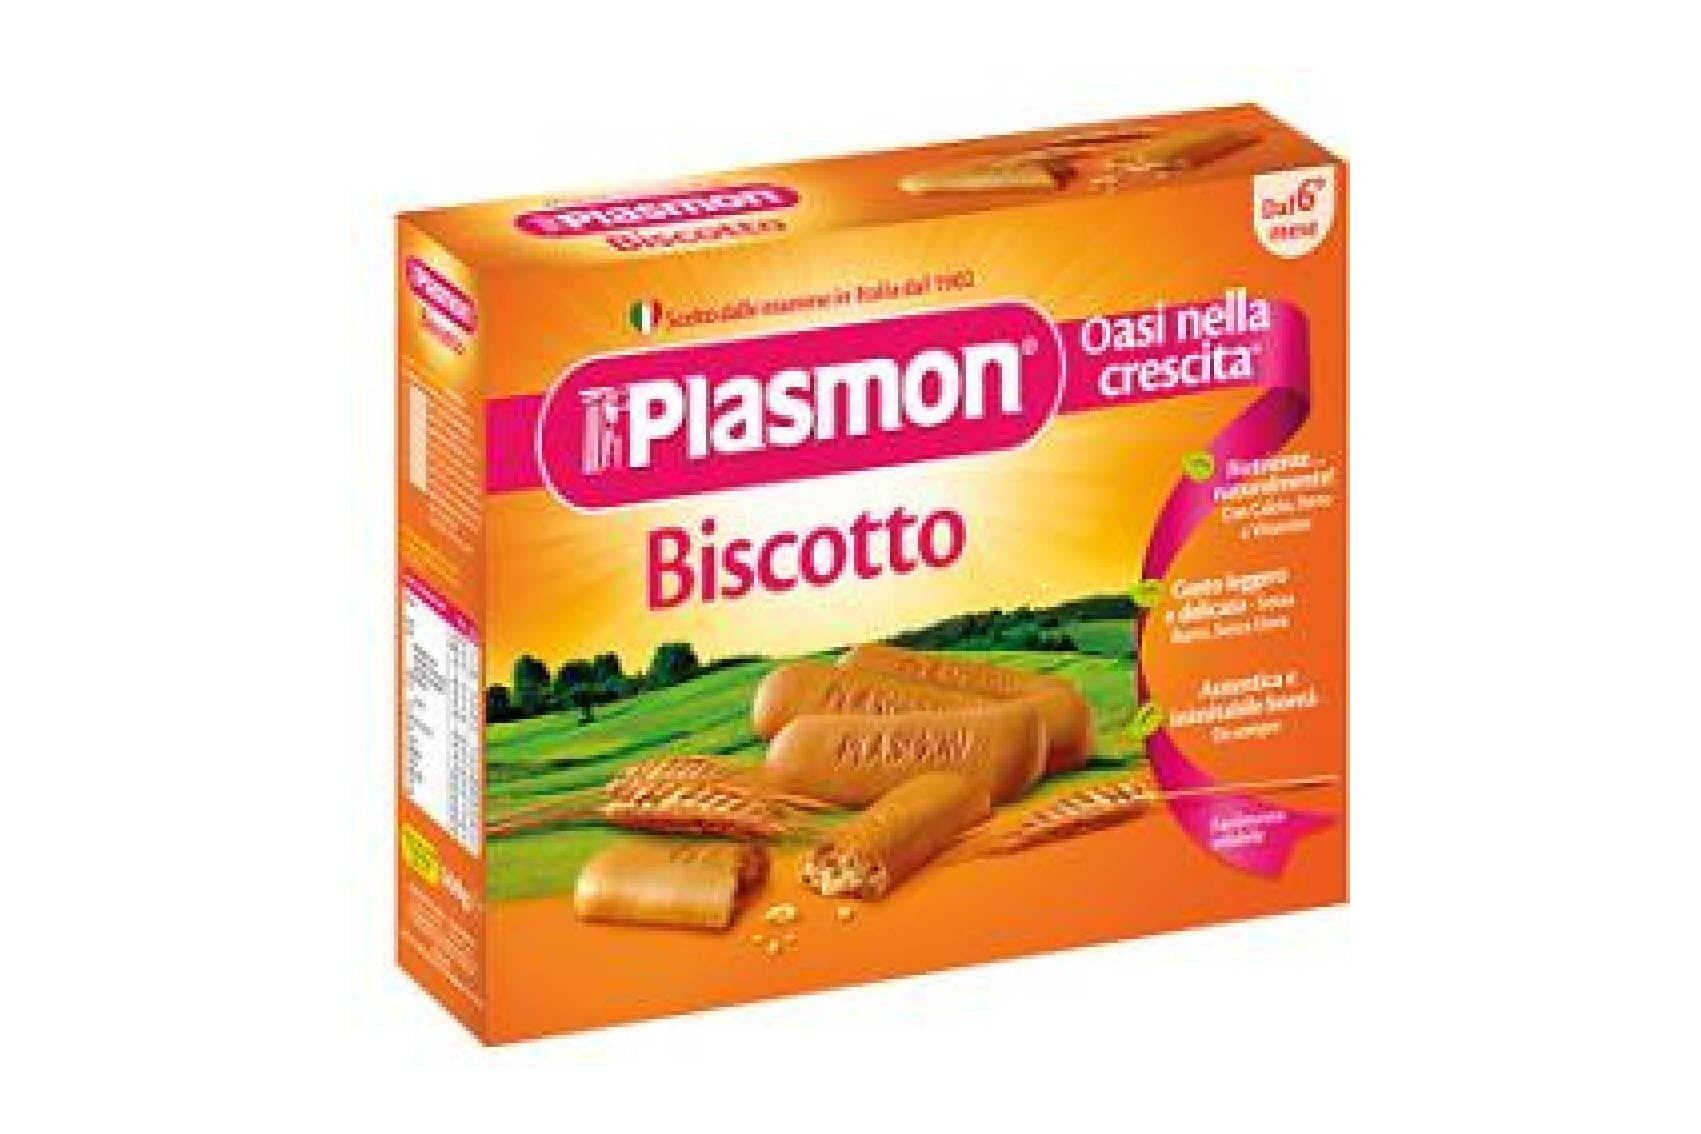 Plasmon Biscuits (Biscotti) 11.3 oz (Case of 6 Packs)